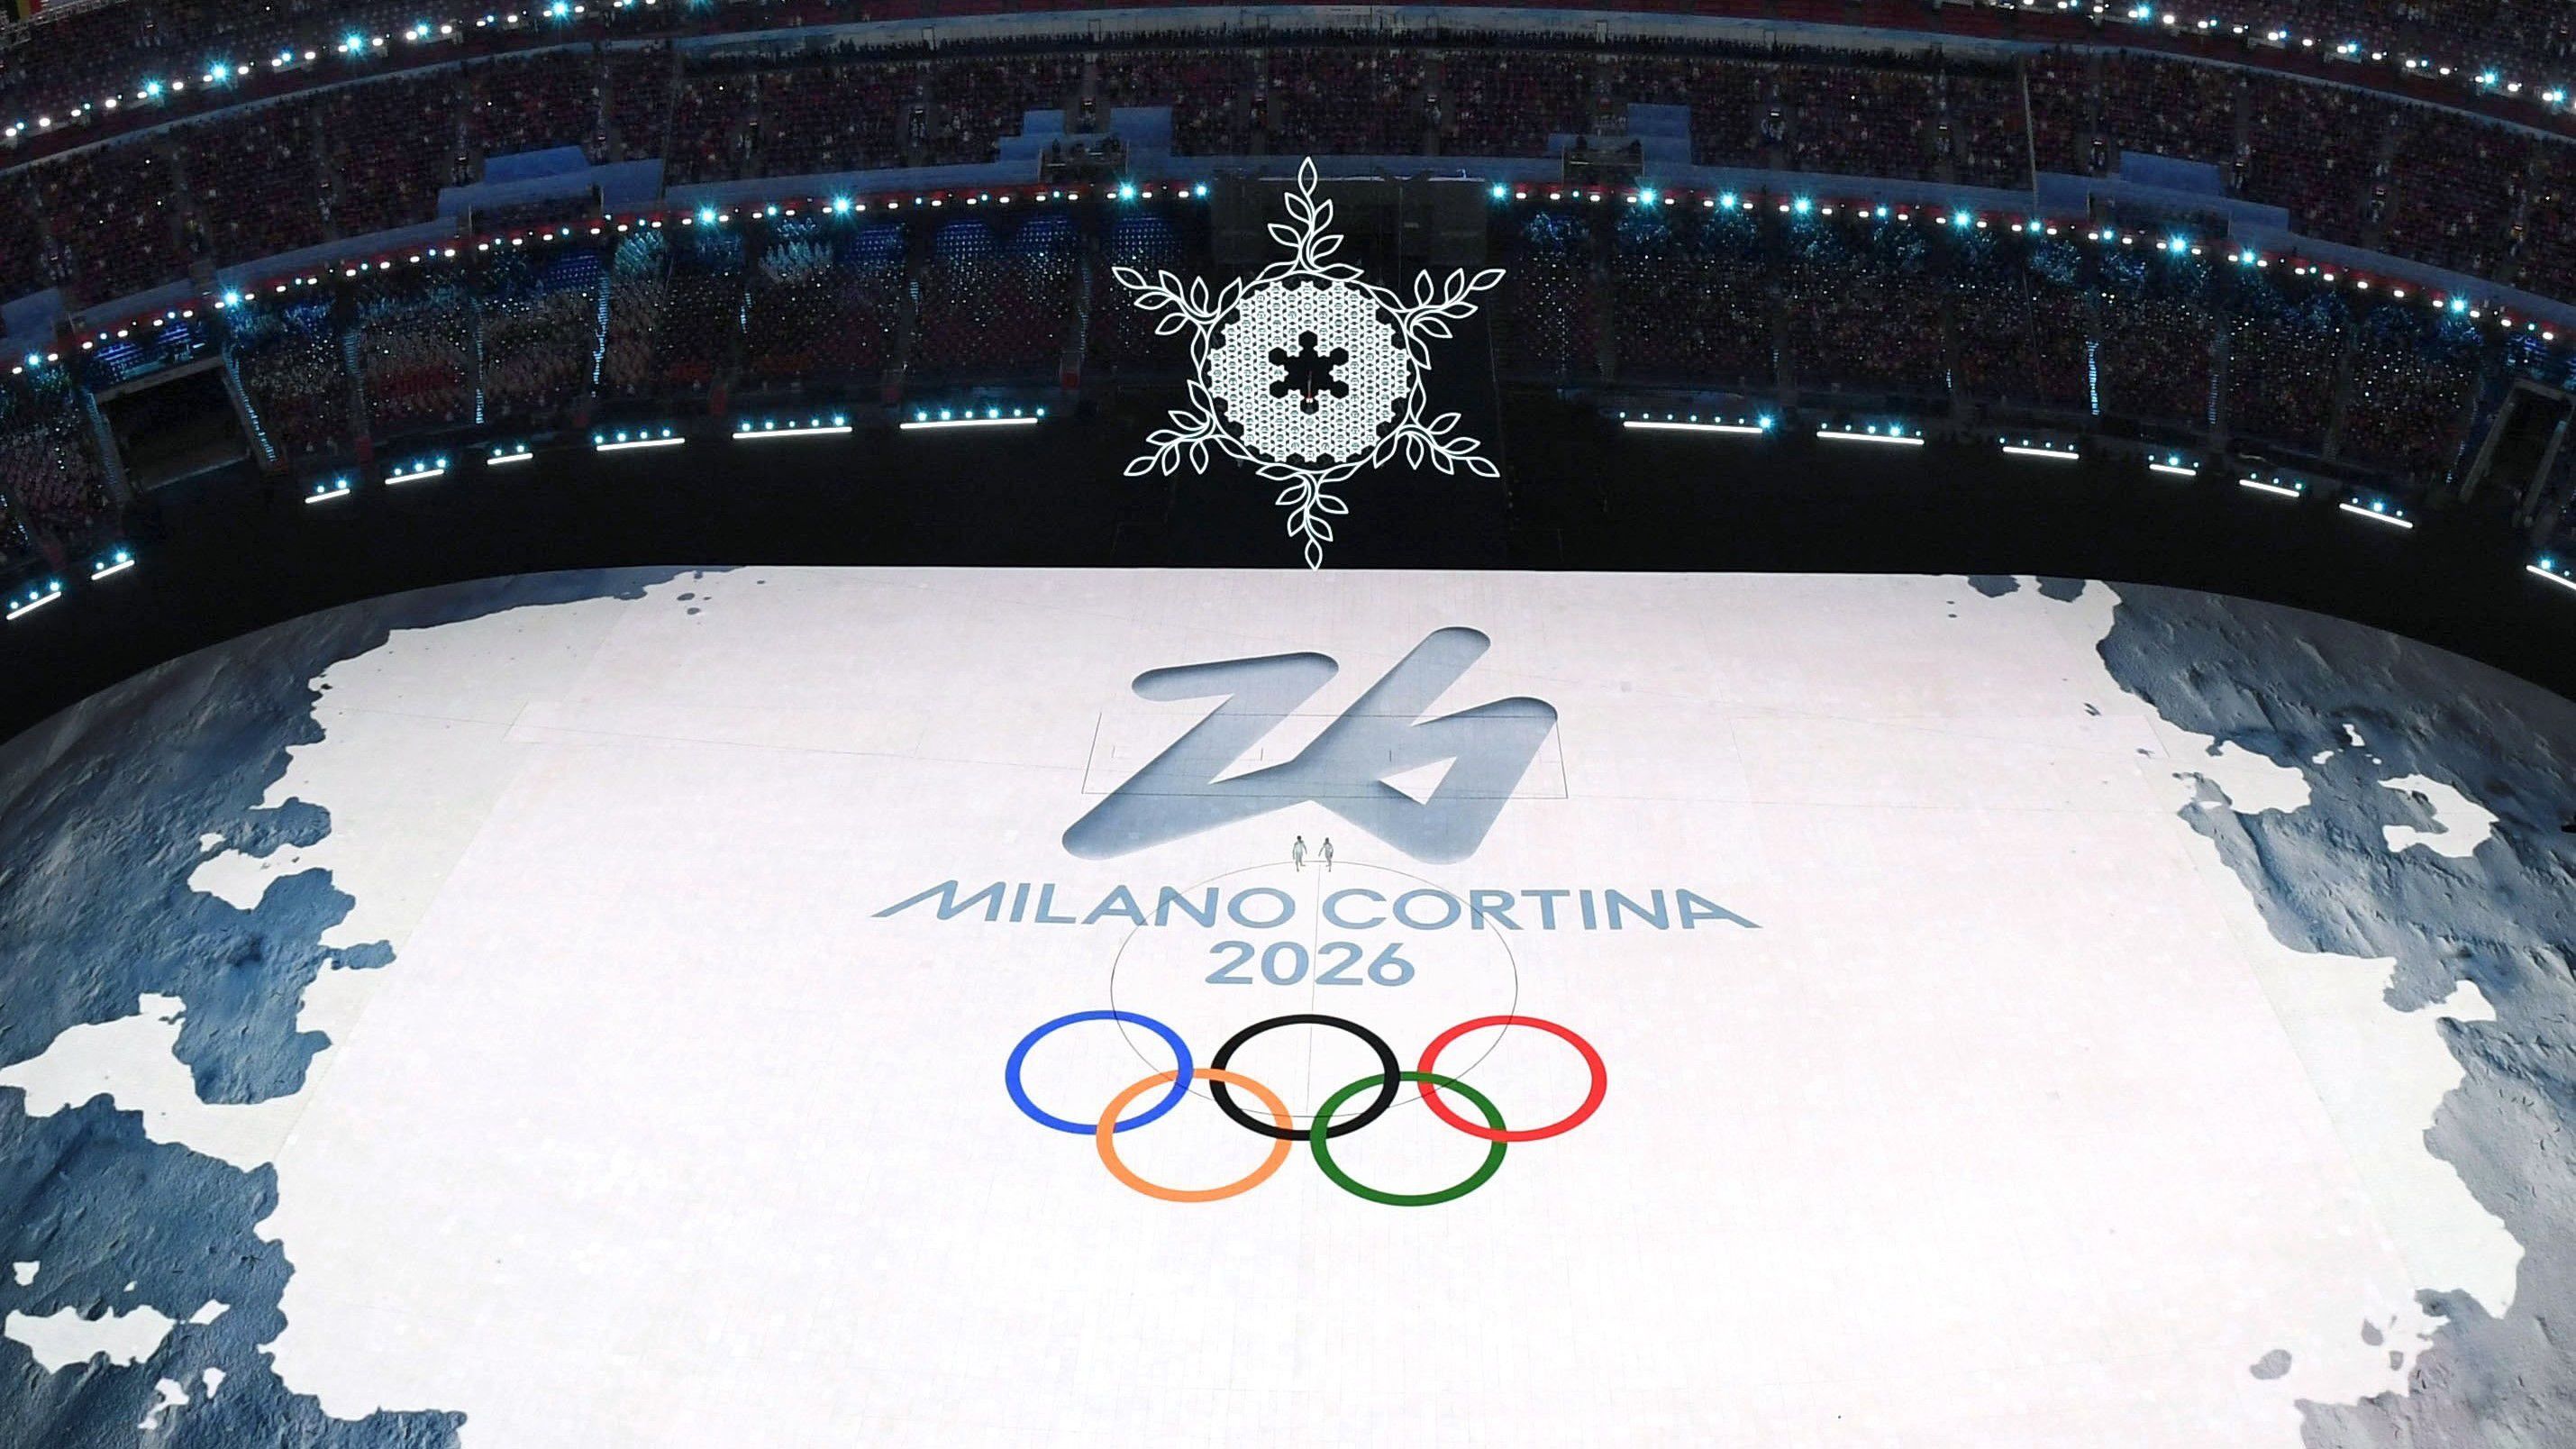 Mint ismert, Milánó és Cortina d’Ampezzo ad otthont a 2026-os téli olimpiának